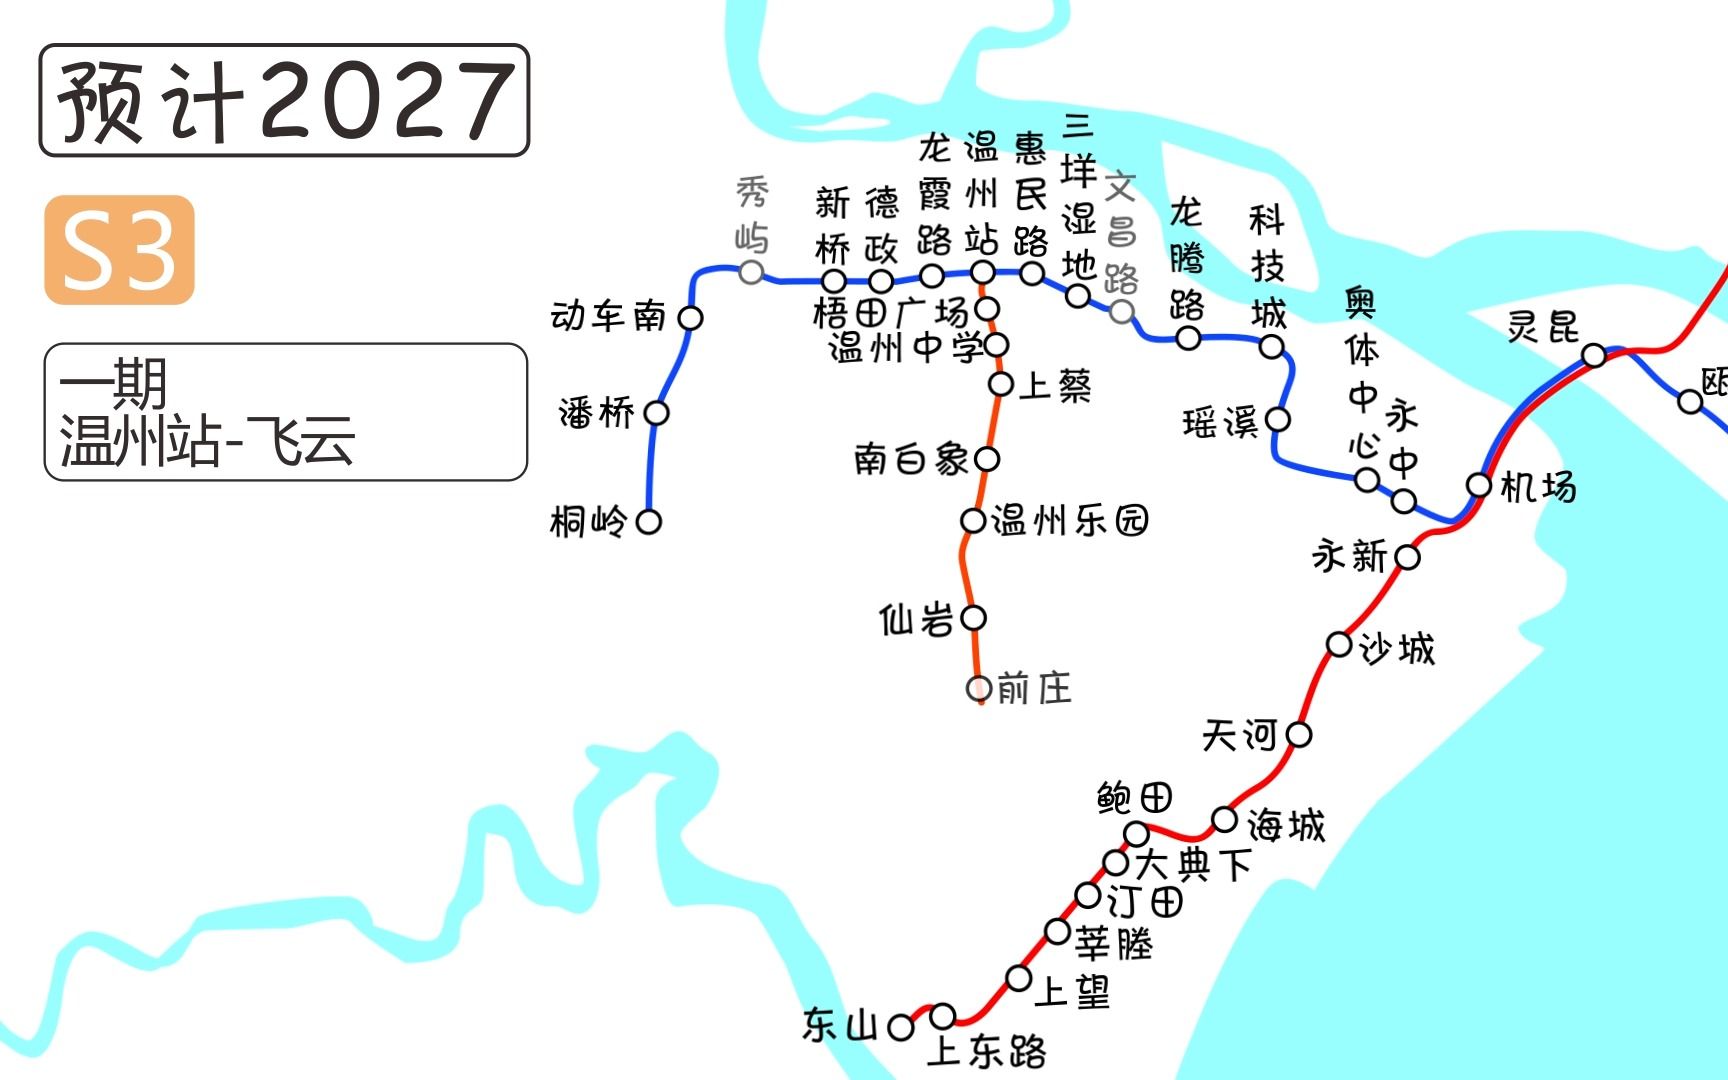 青田温溪轻轨规划图图片